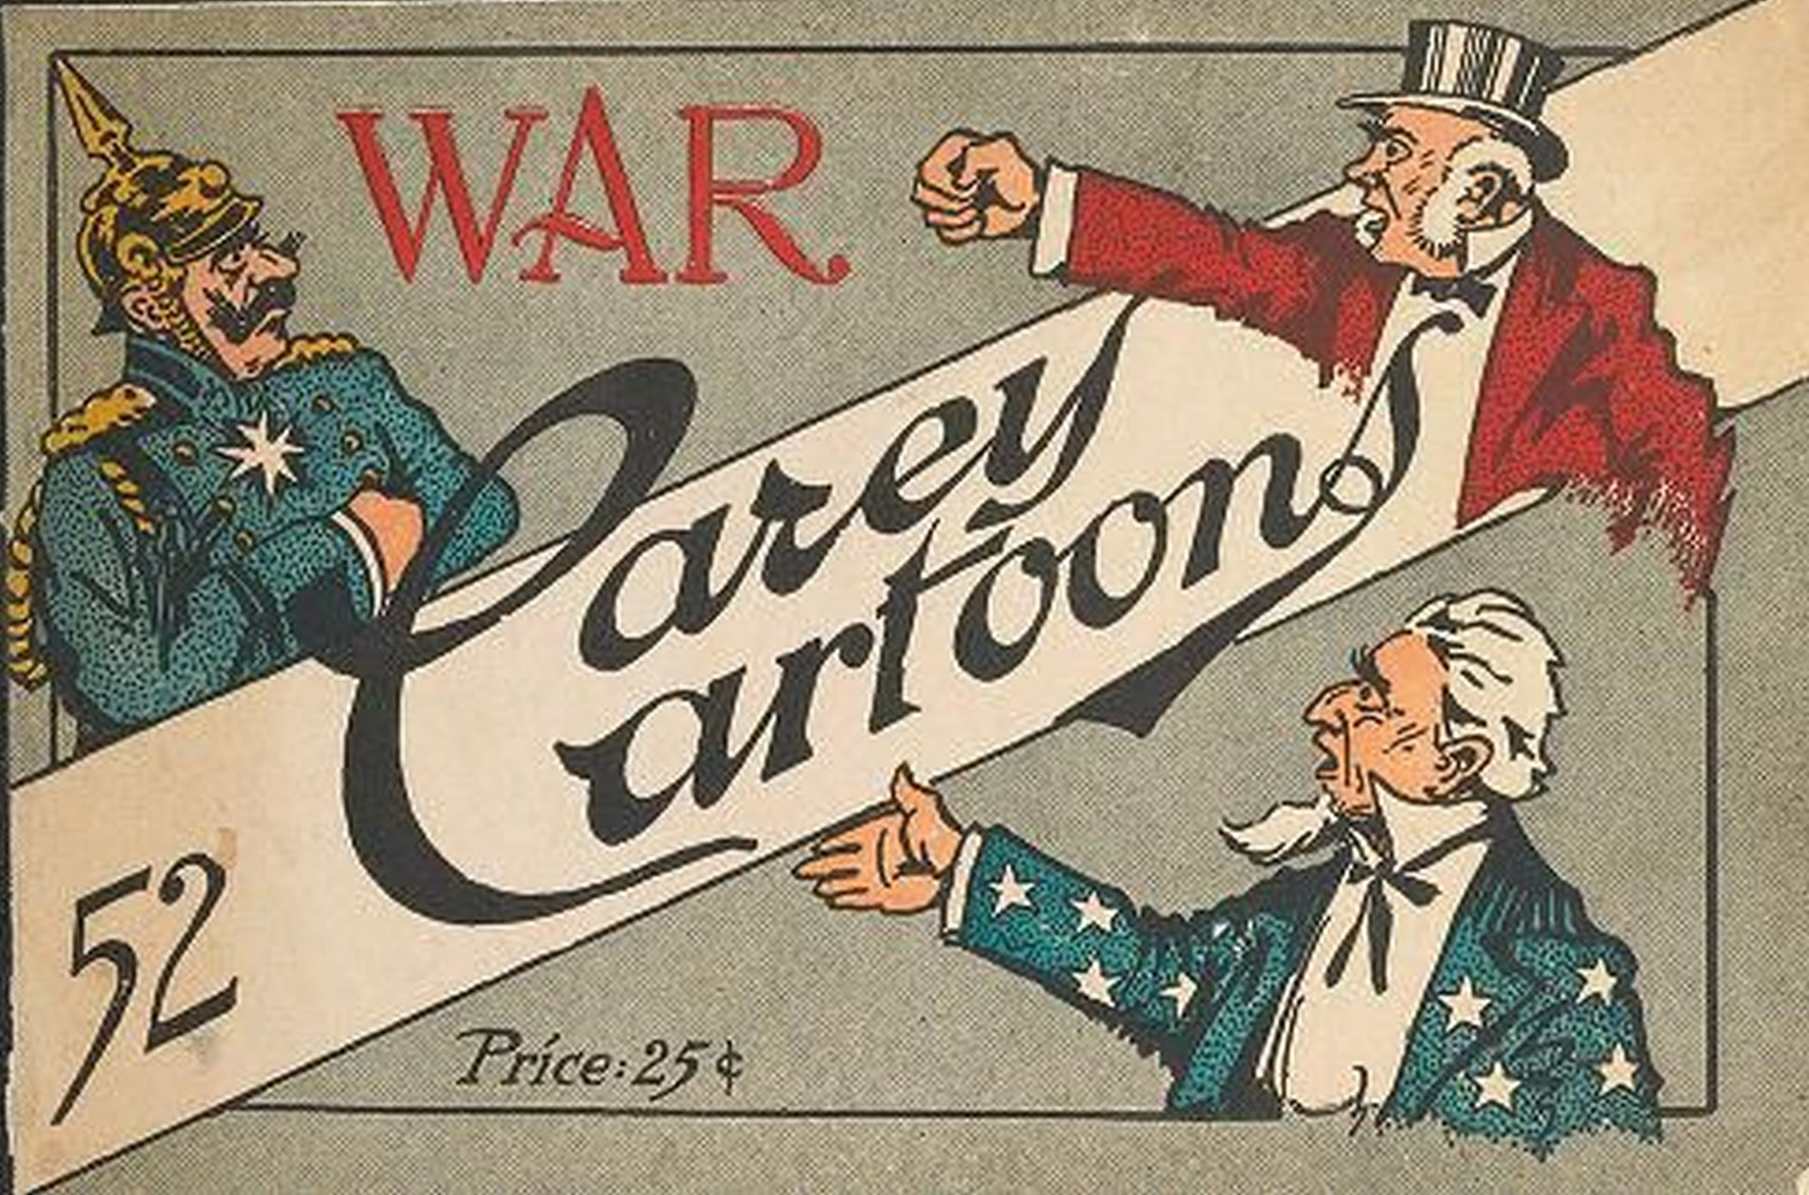 War, 52 Carey Cartoons